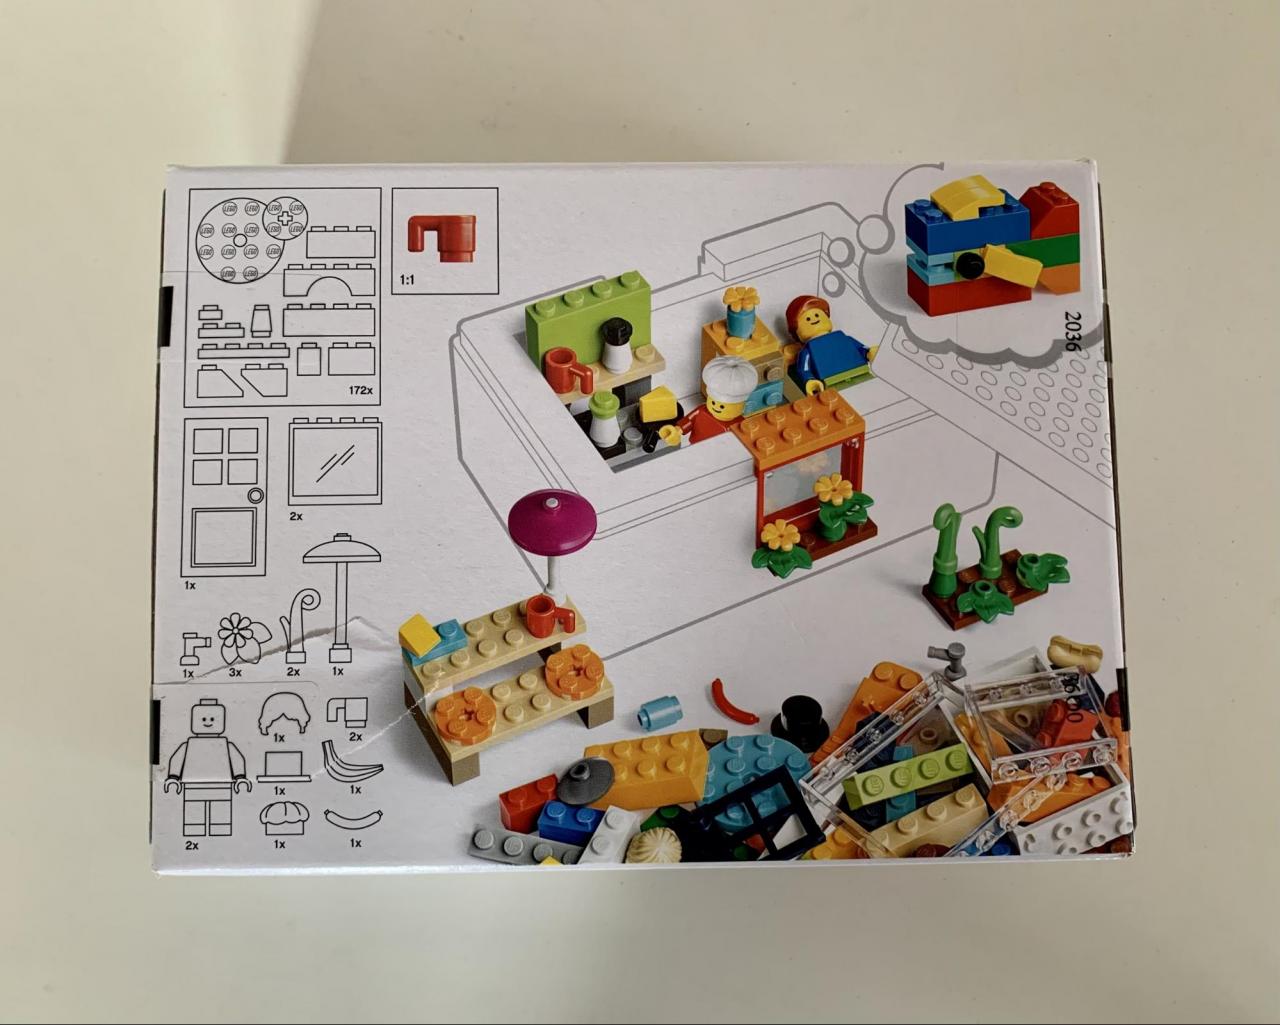 イケア Lego レゴブロックで楽しく収納 話題 ビッグレク は遊び方無限大 2 2 ハピママ